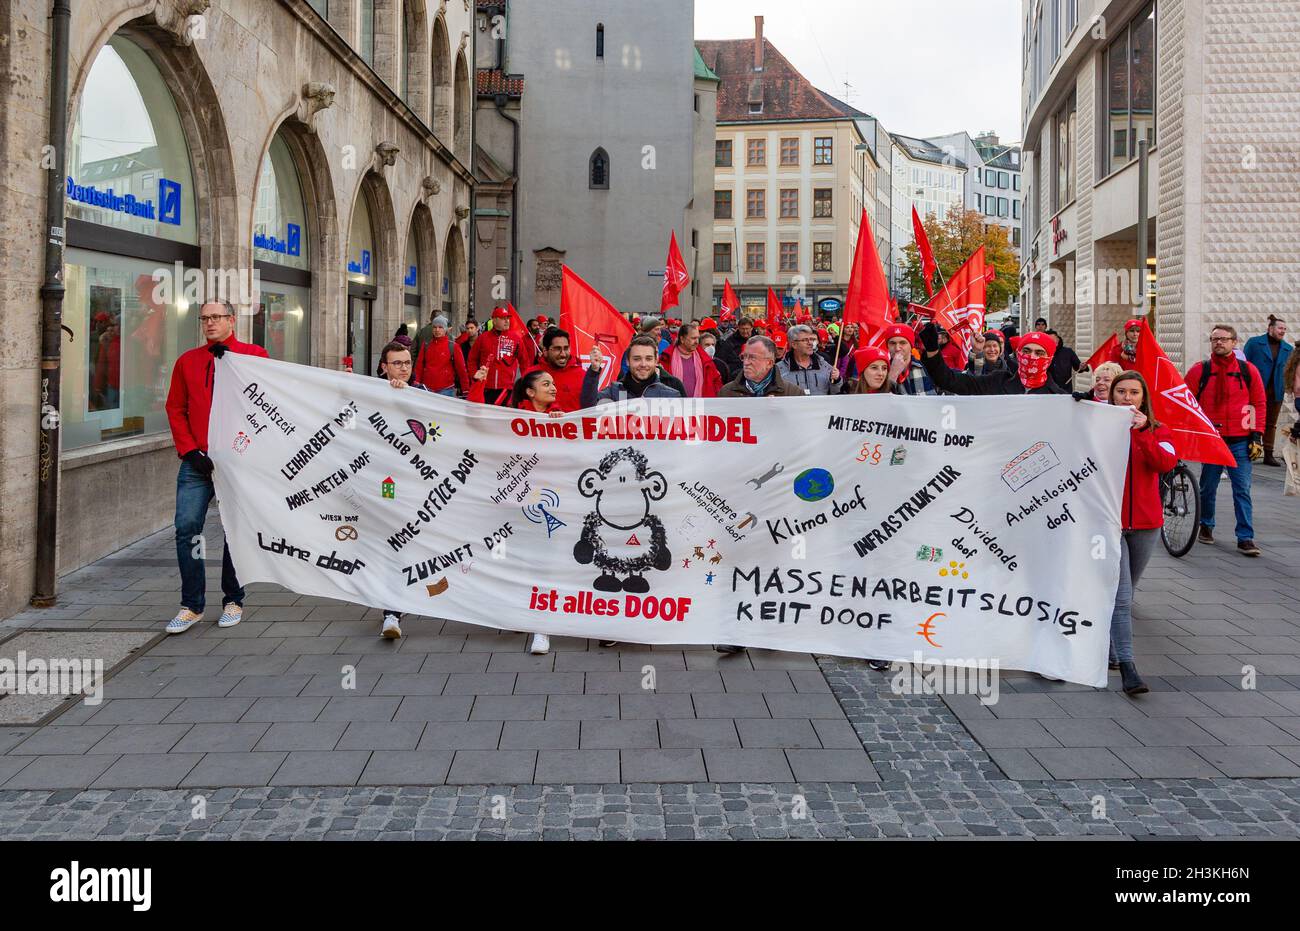 Am 29. Oktober 2021 sammeln sich ein paar wenige Hundert IG Metaller in München um von verschiedenen Fingern zu einer Kundgebung am Odeonsplatz zu demontieren. Sie bilden von den Koalitionsverhandlern von SPD, Bündnis 90/die Grünen und FDP, unter anderem Klimagerechtigkeit, faire Löhne, ein Ende der Schuldenbrems und keine Flexibilisierung der Arbeitszeiten. - am 29. Oktober 2021 versammelten sich einige Hundert Gewerkschafter der IG Metall in München, um vor der Fragestunde von CSU, SPD, Grünen und FDP zu protestieren. Sie fordern Klimagerechtigkeit, faire Löhne, ein Ende der Schuldenbremse und kein Fle Stockfoto